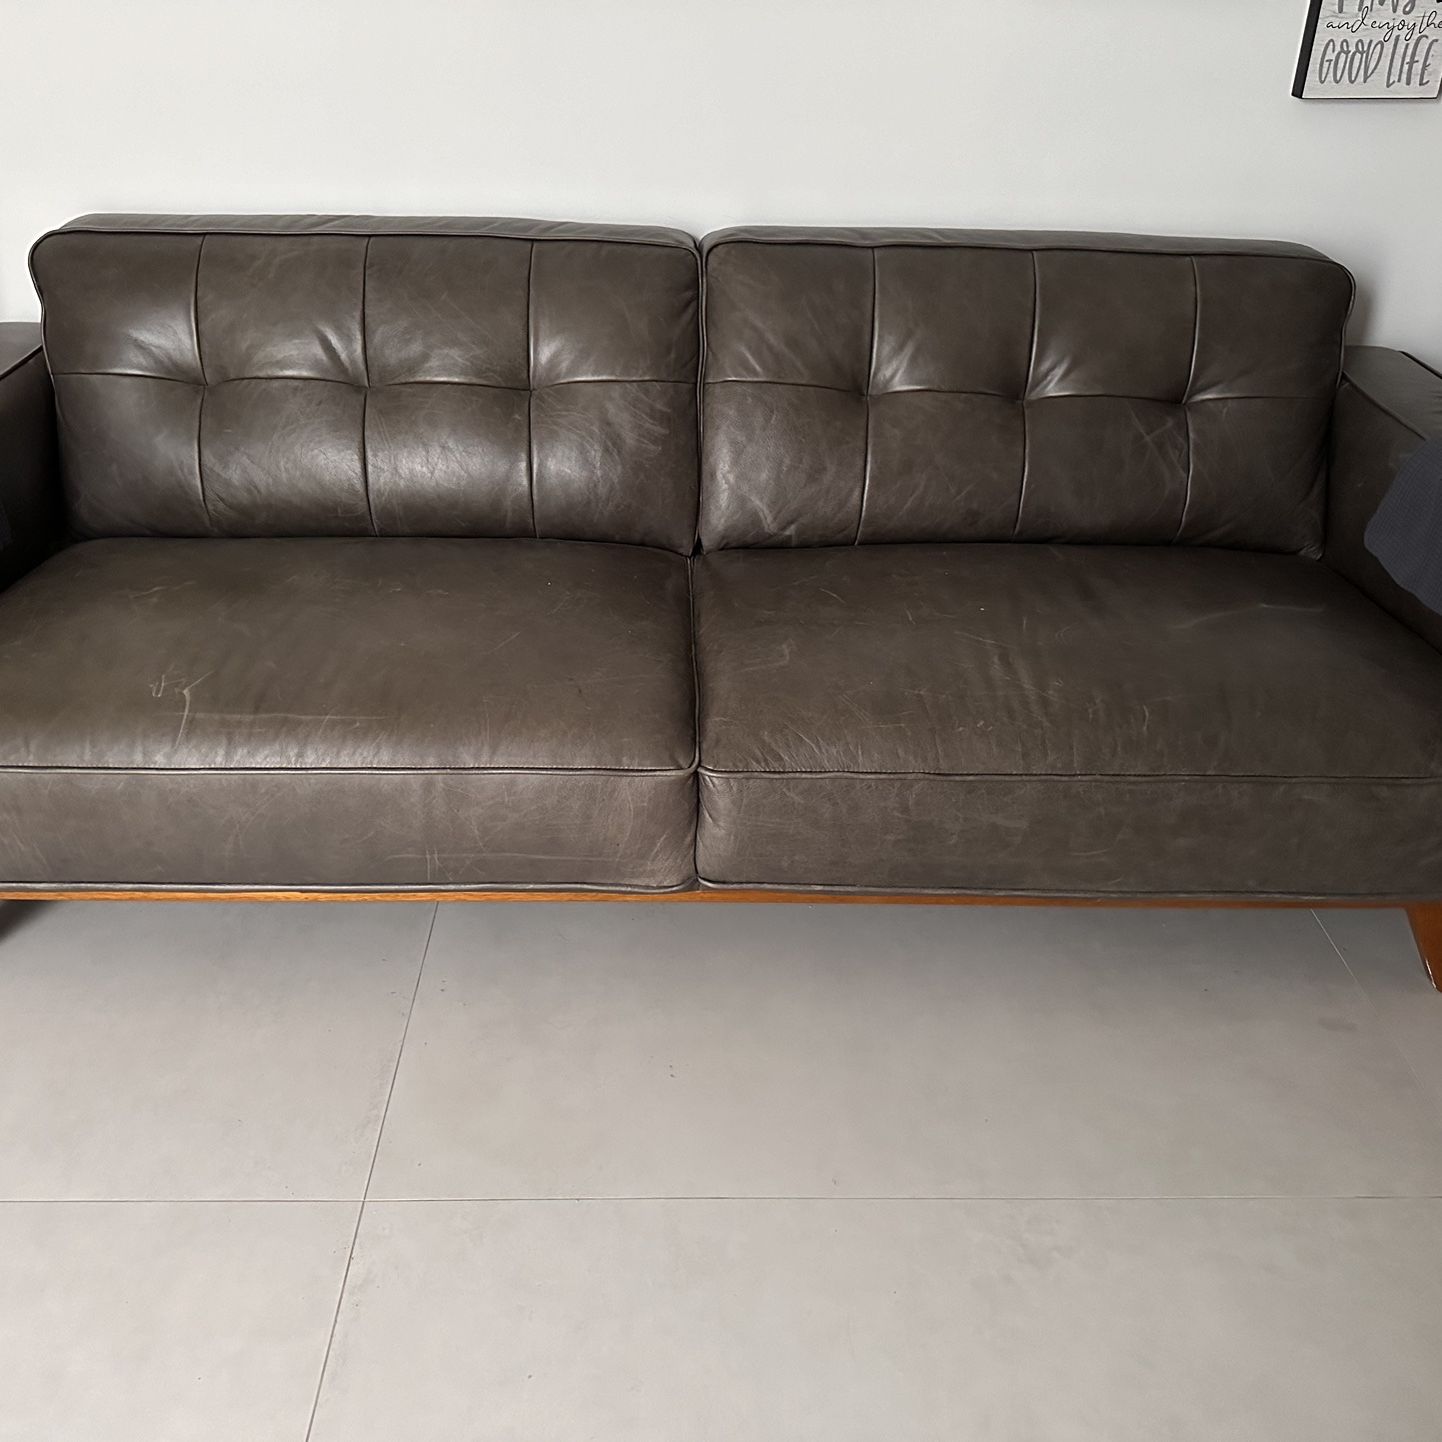 Leather sofa $50